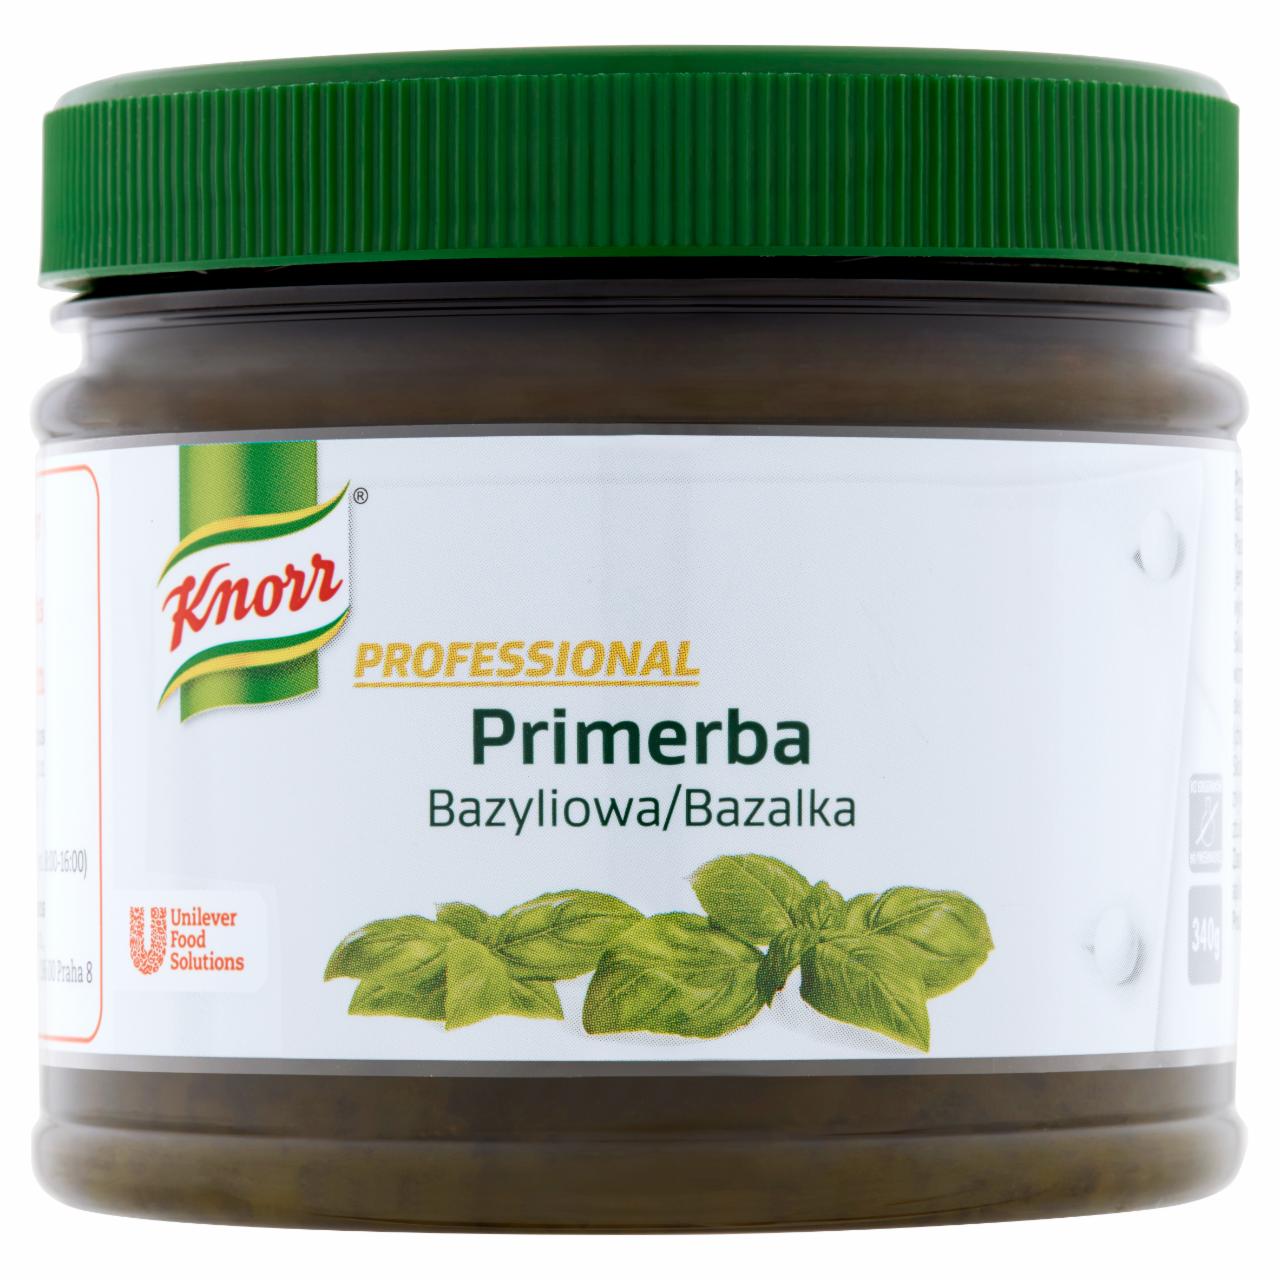 Zdjęcia - Knorr Professional Primerba bazyliowa Pasta ziołowa do przyprawiania potraw 340 g